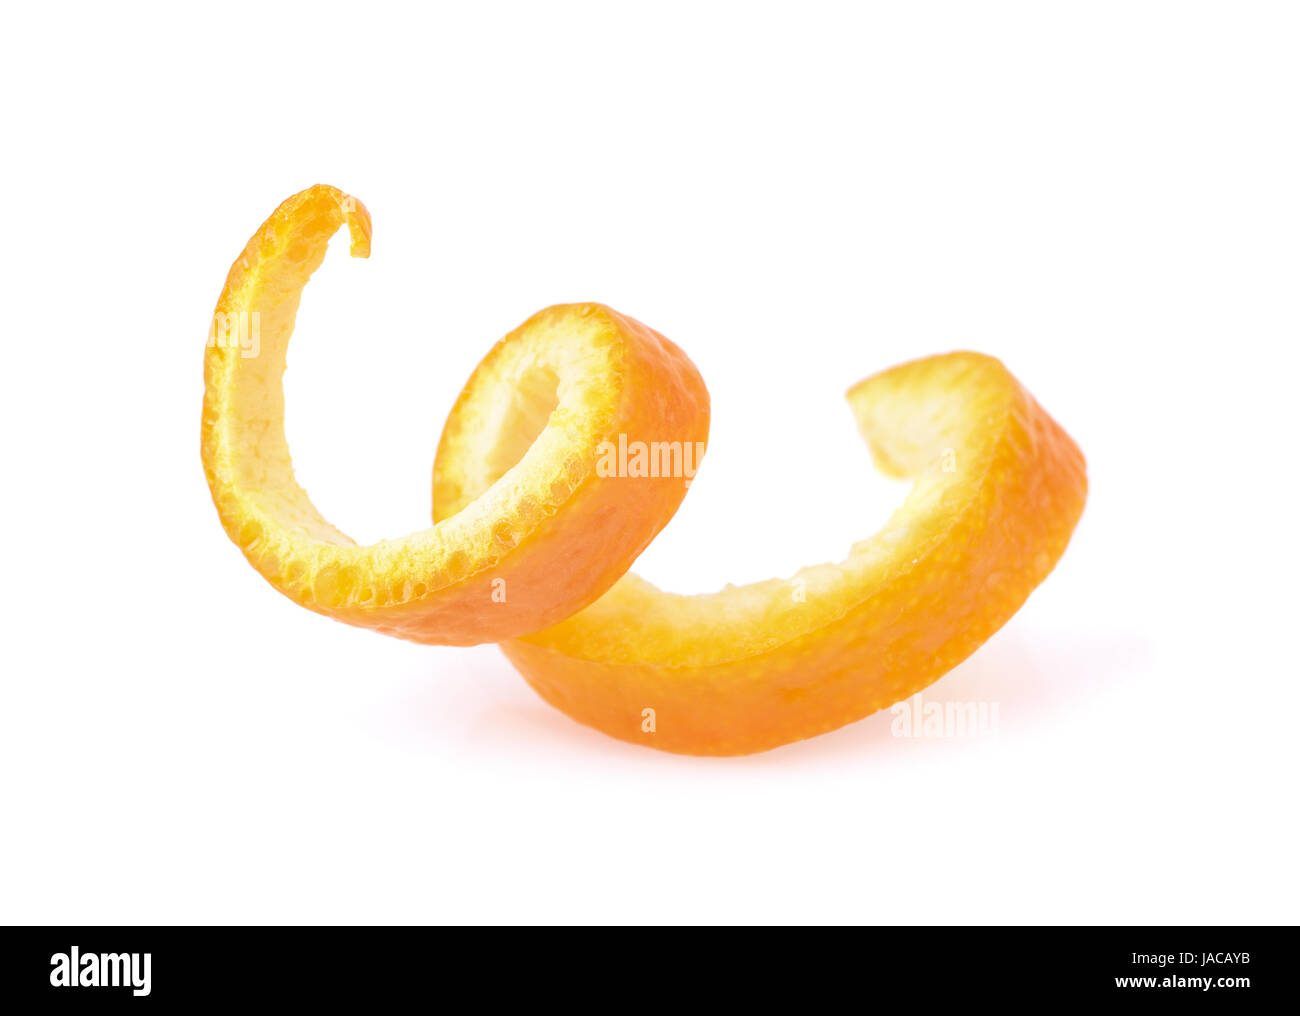 La ralladura de naranja aislado en blanco en espiral Foto de stock